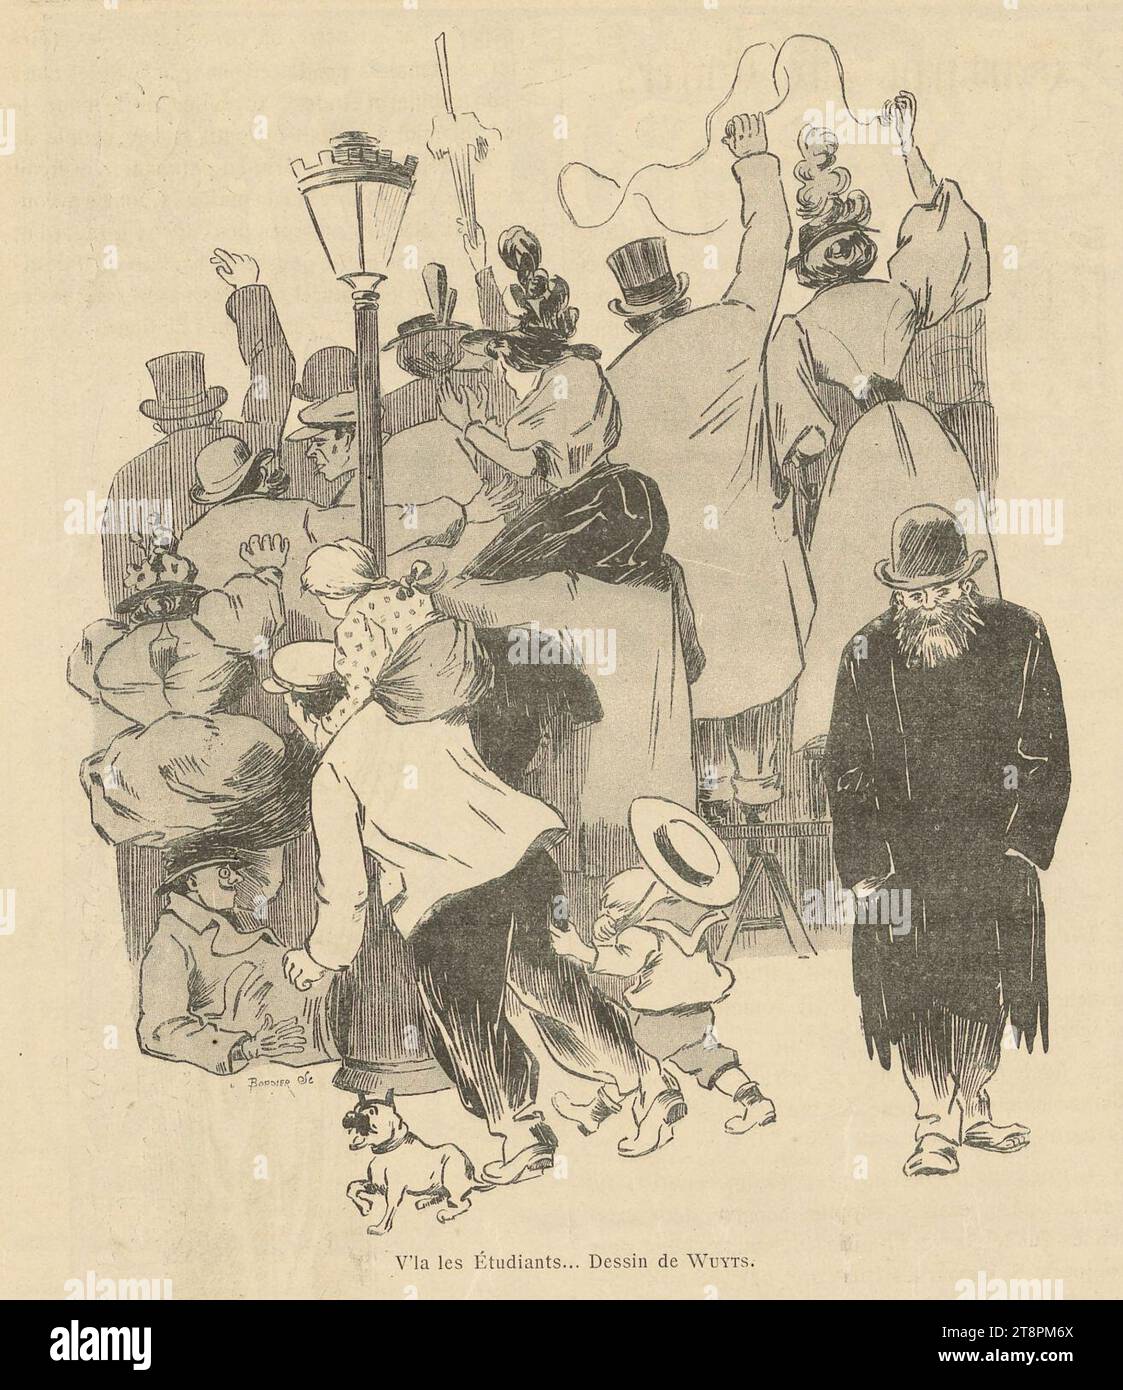 V'là les Etudiants - Dessin de Wuyts - Au Quartier latin, organe de la cavalcade des étudiants - Paris 1897. Stock Photo